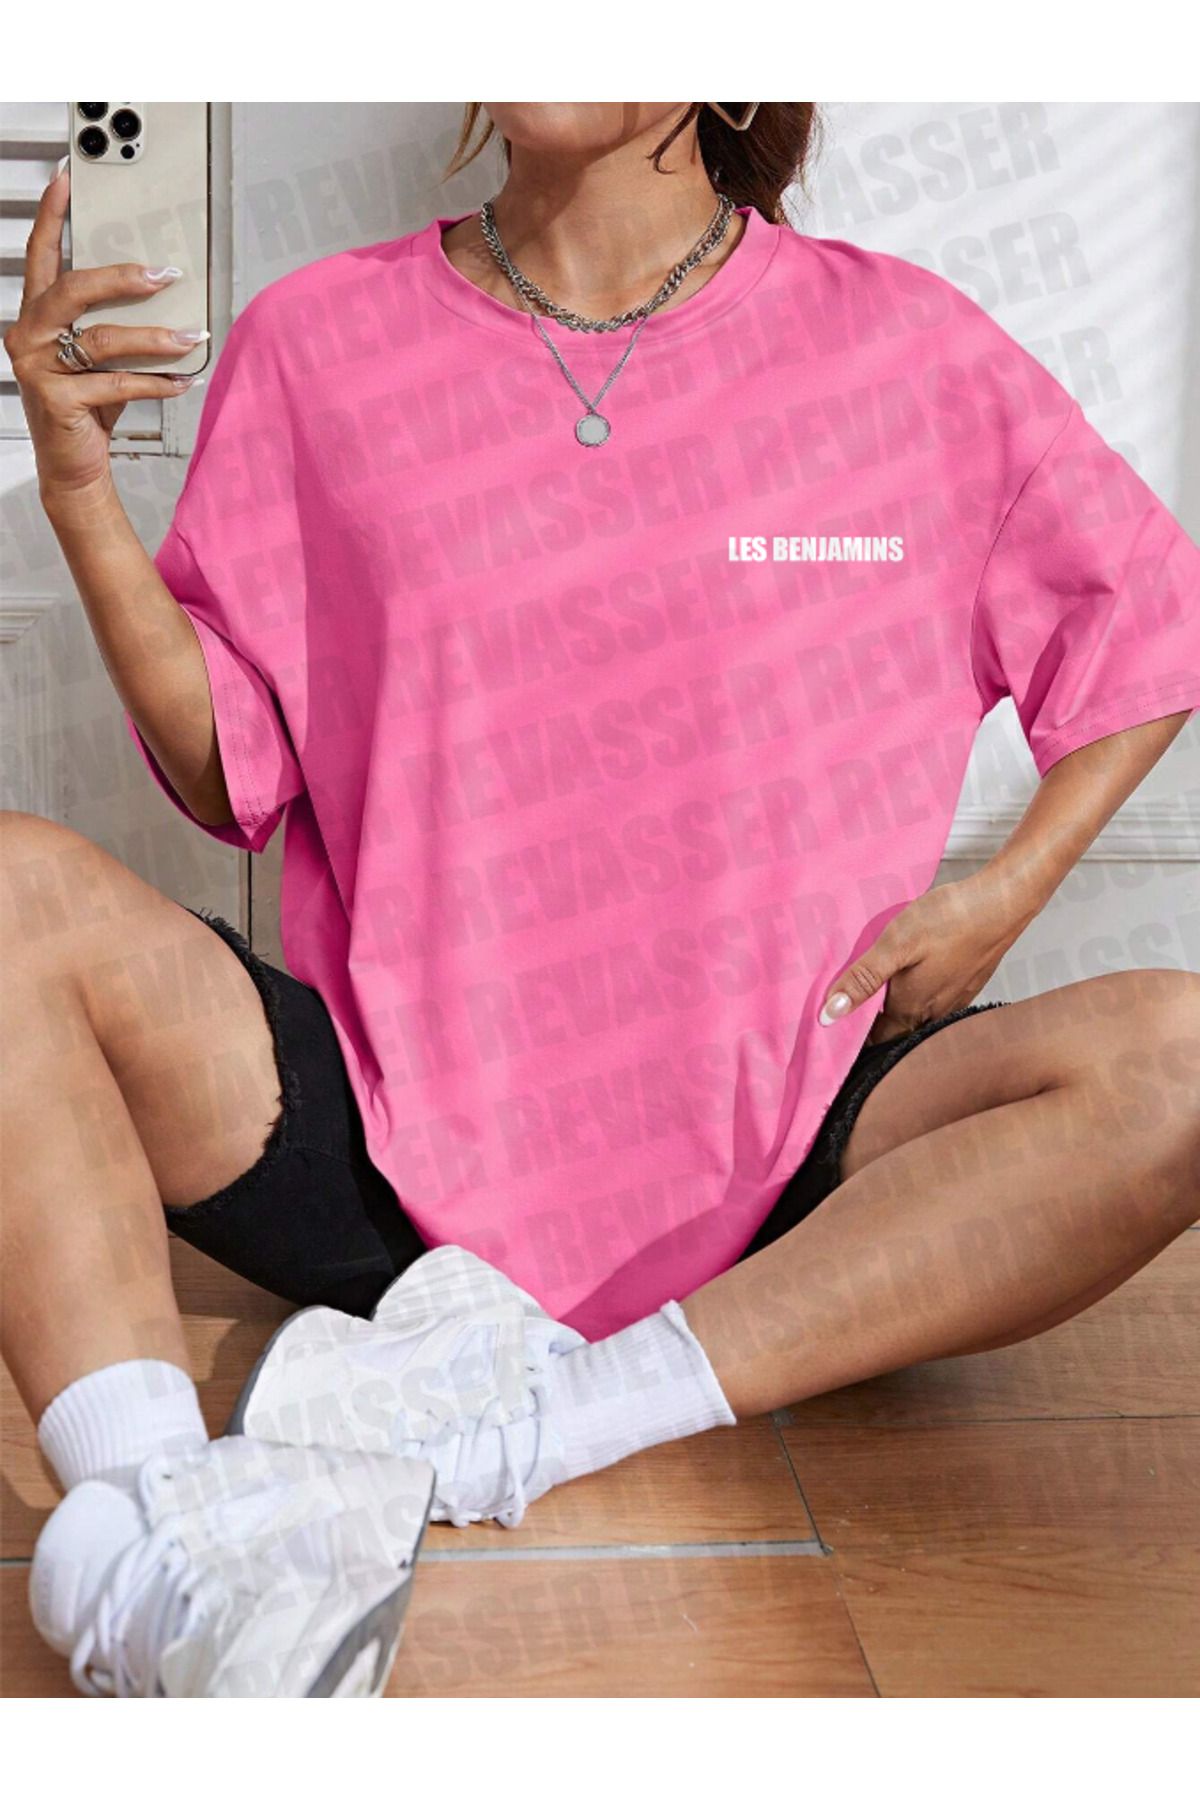 Revasser Unisex Kadın/Erkek LESBENJAMINS Renkli Özel Baskılı Oversize Pamuk Penye T-Shirt